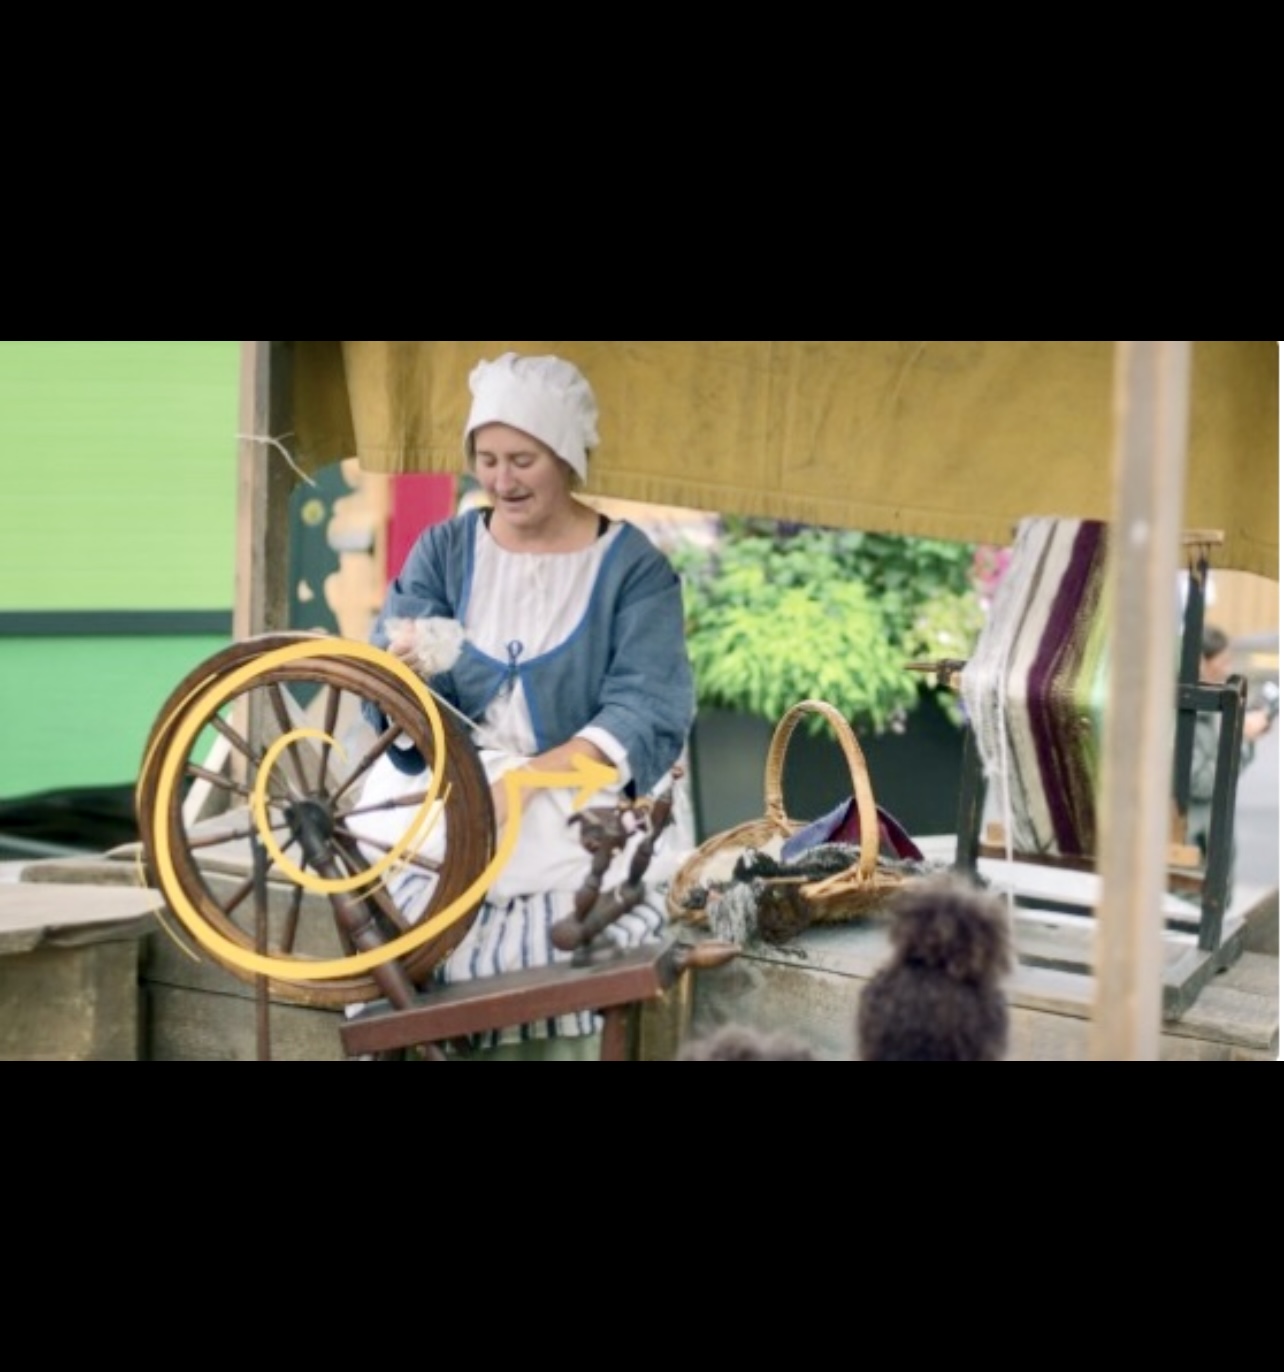 Au Marché public - Pointe-à-Callière, une femme manie habilement un rouet.